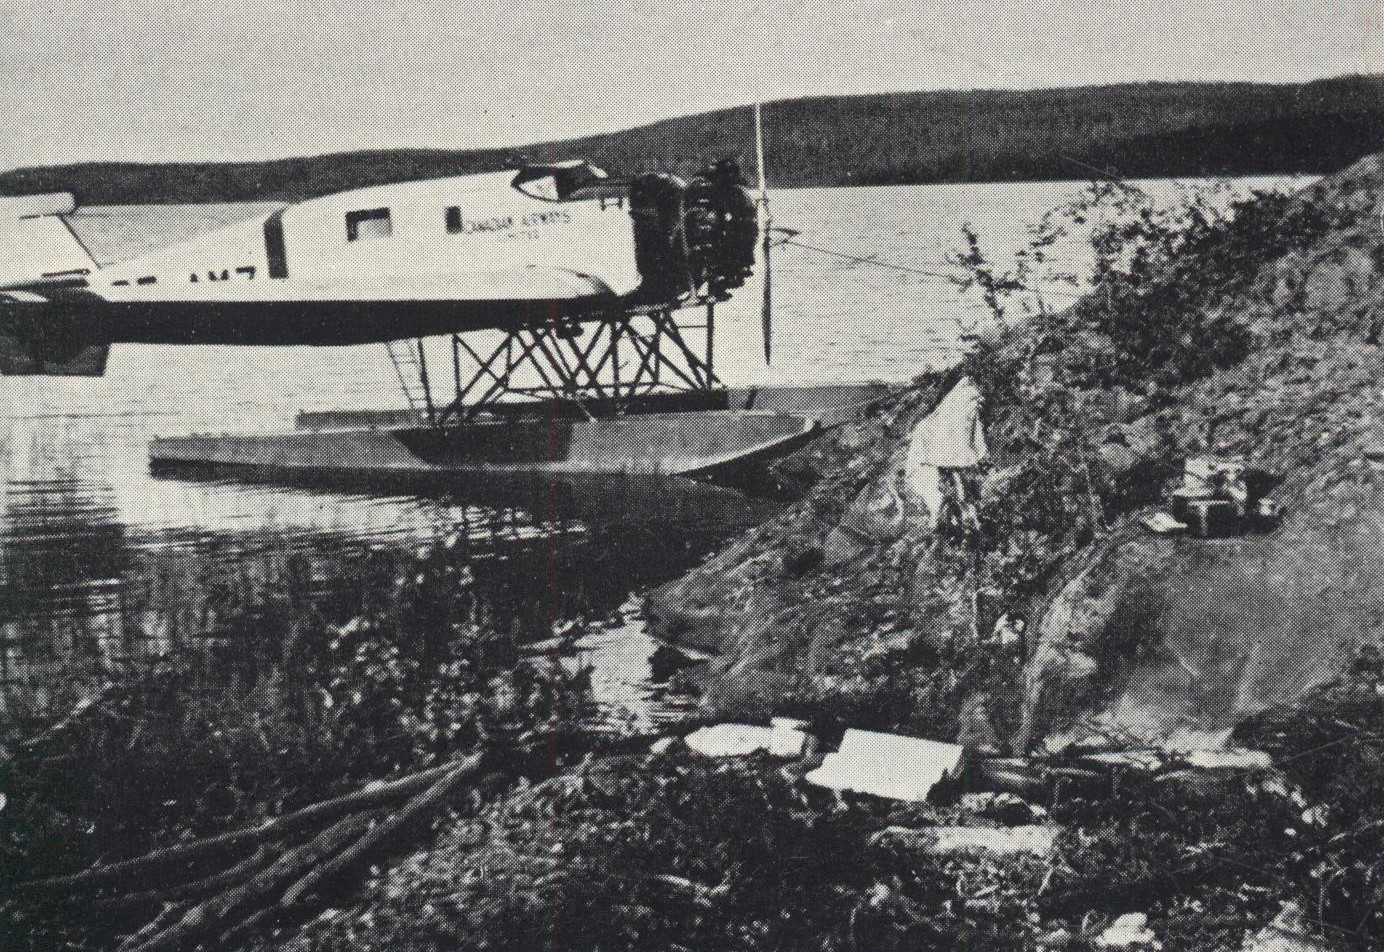 Seaplane beside shore in wilderness